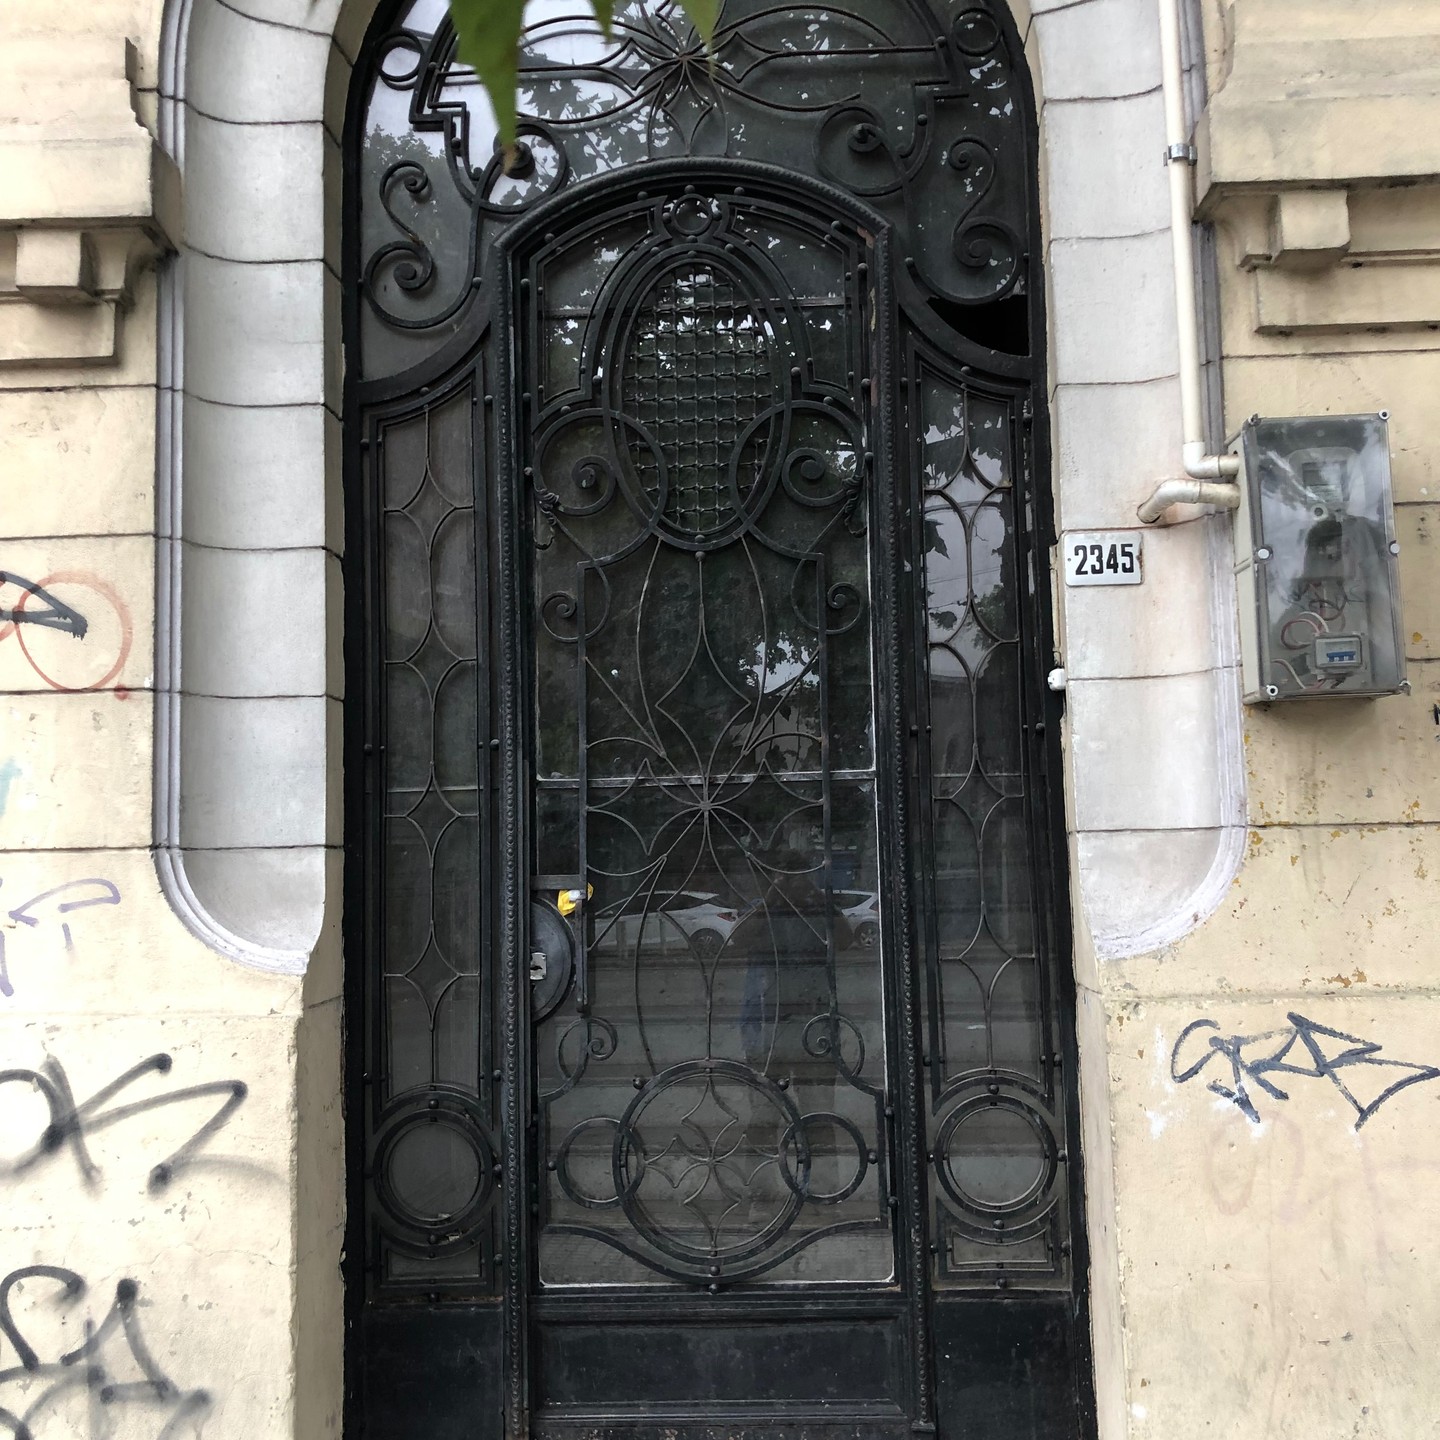 So wir machen mit den Türen weiter. Heute gibt es zwei Türen, ein mit Flagge. Also genießt die Bilder. #montevideo #uruguay #türen #tueren #doors #reisen #unterwegs #travel